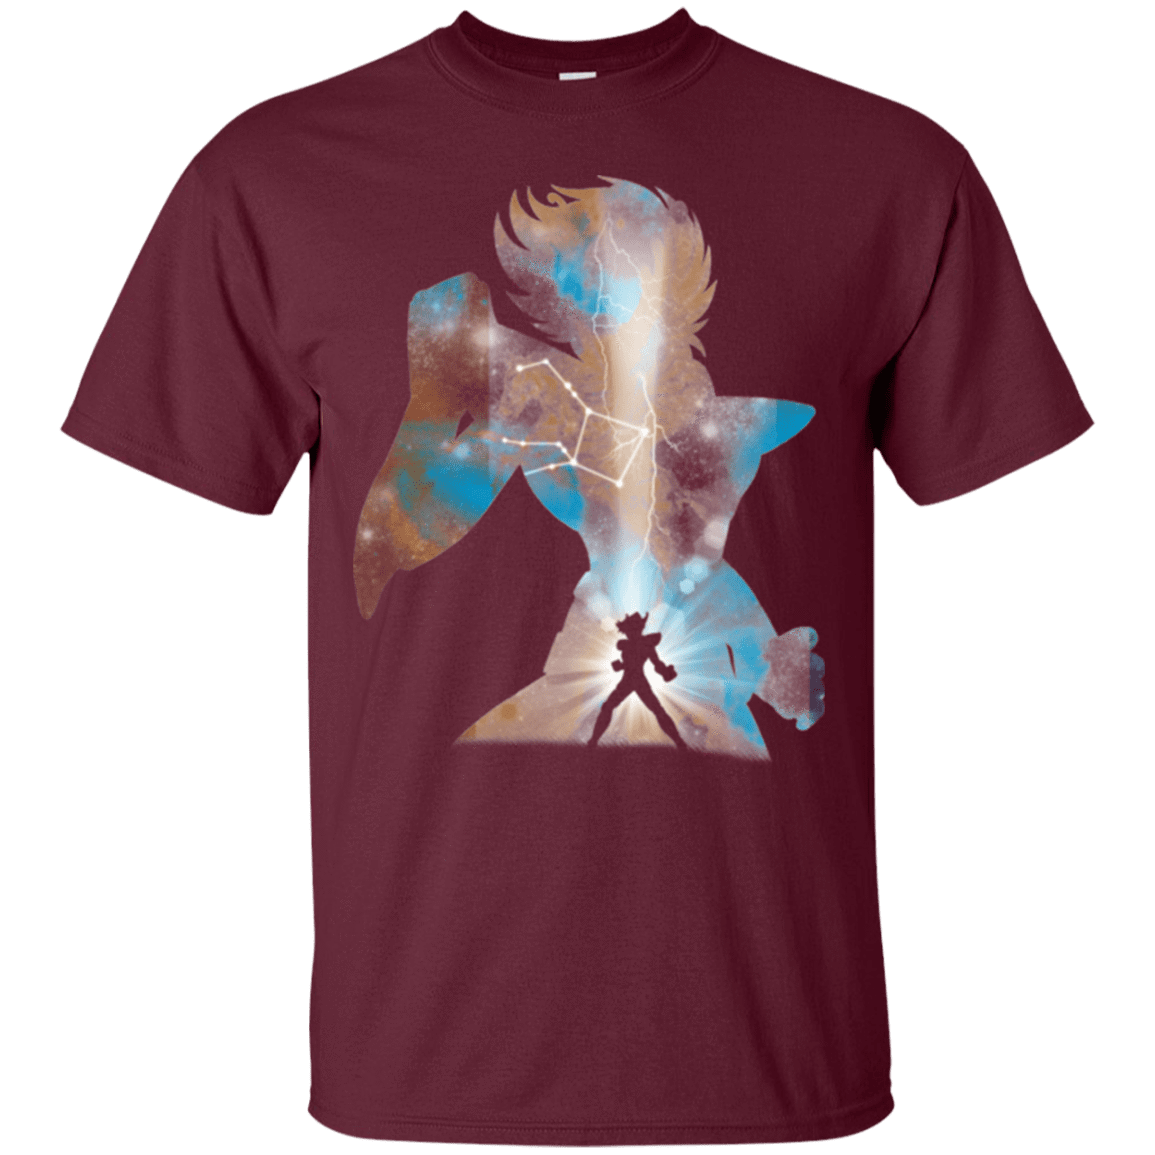 T-Shirts Maroon / Small The Pegasus T-Shirt